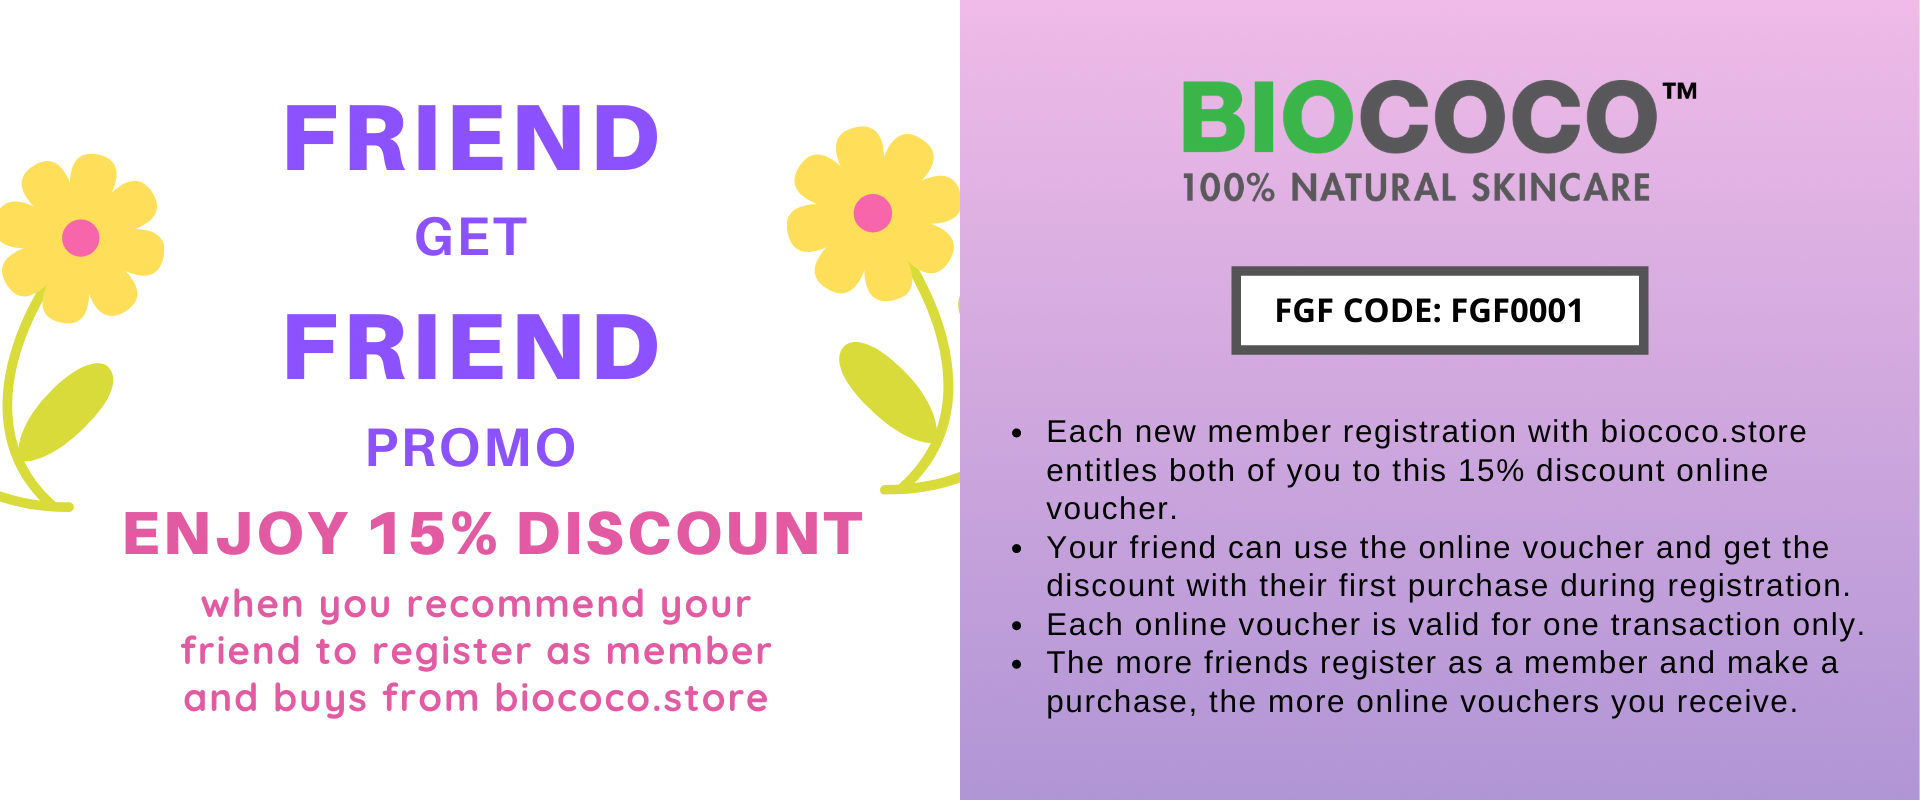 Promos & Discounts BIOCOCO Store